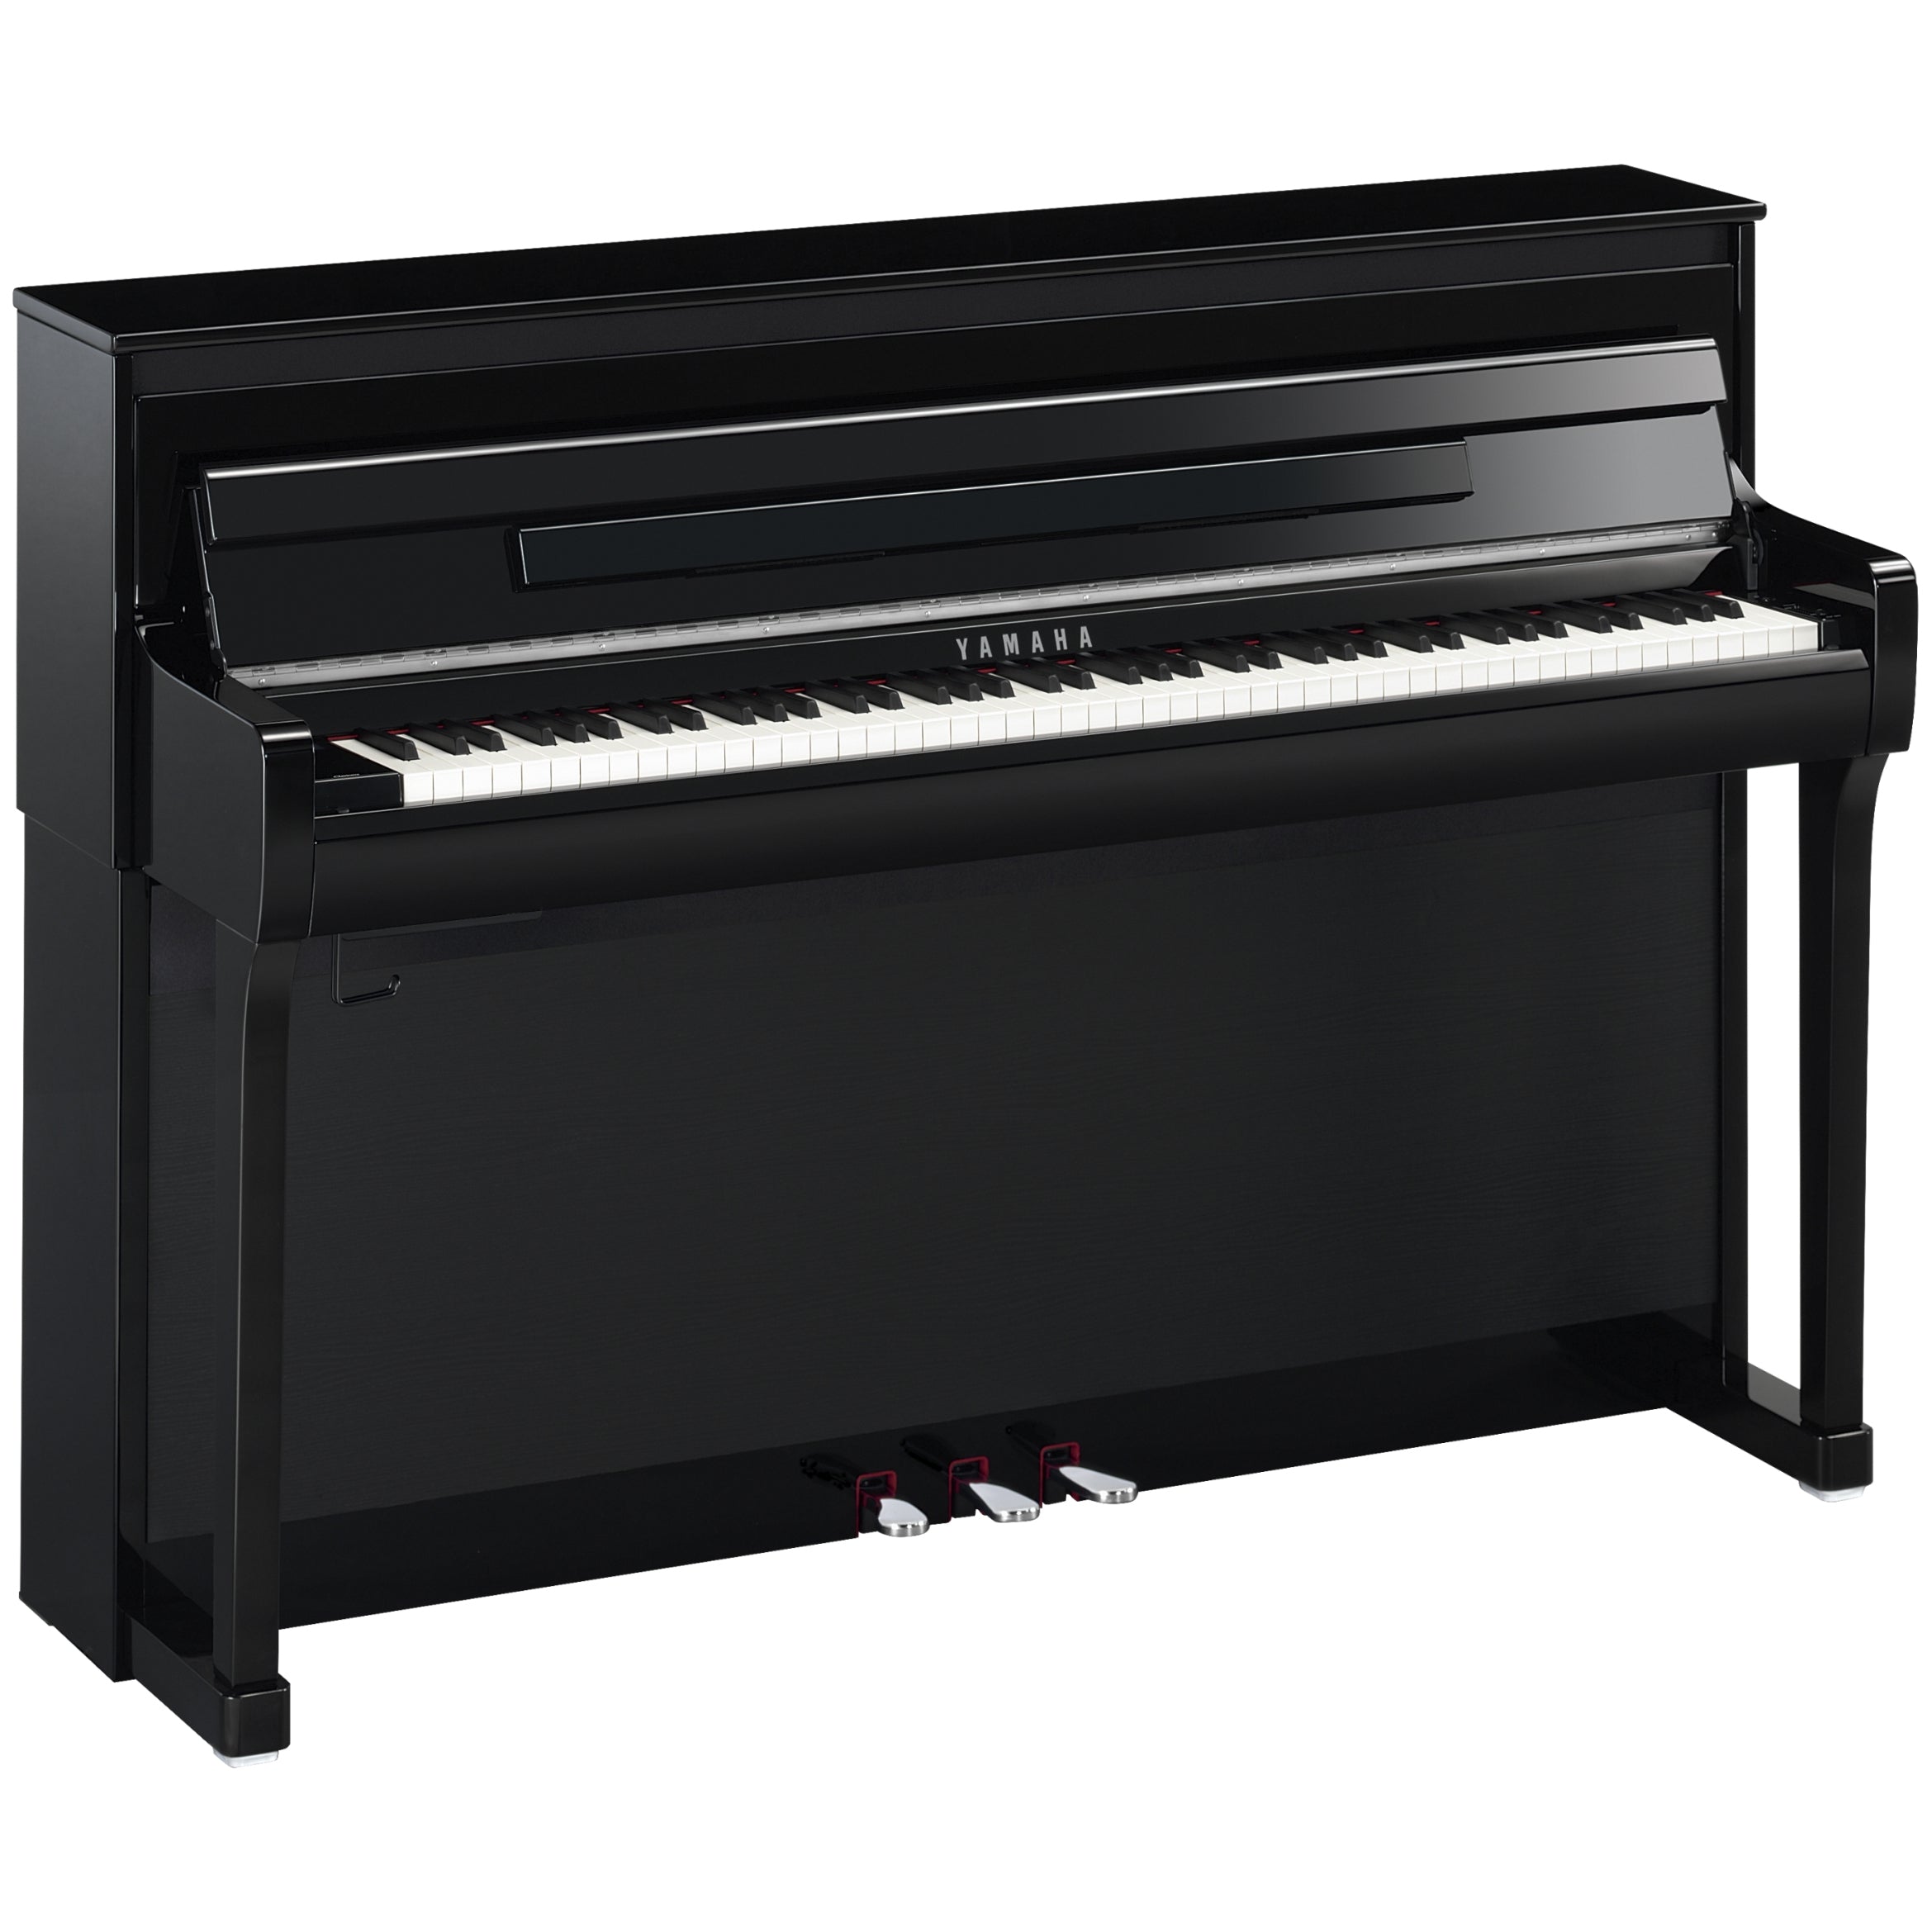 Yamaha Clavinova CLP-885 Digital Piano - Polished Ebony, View 4